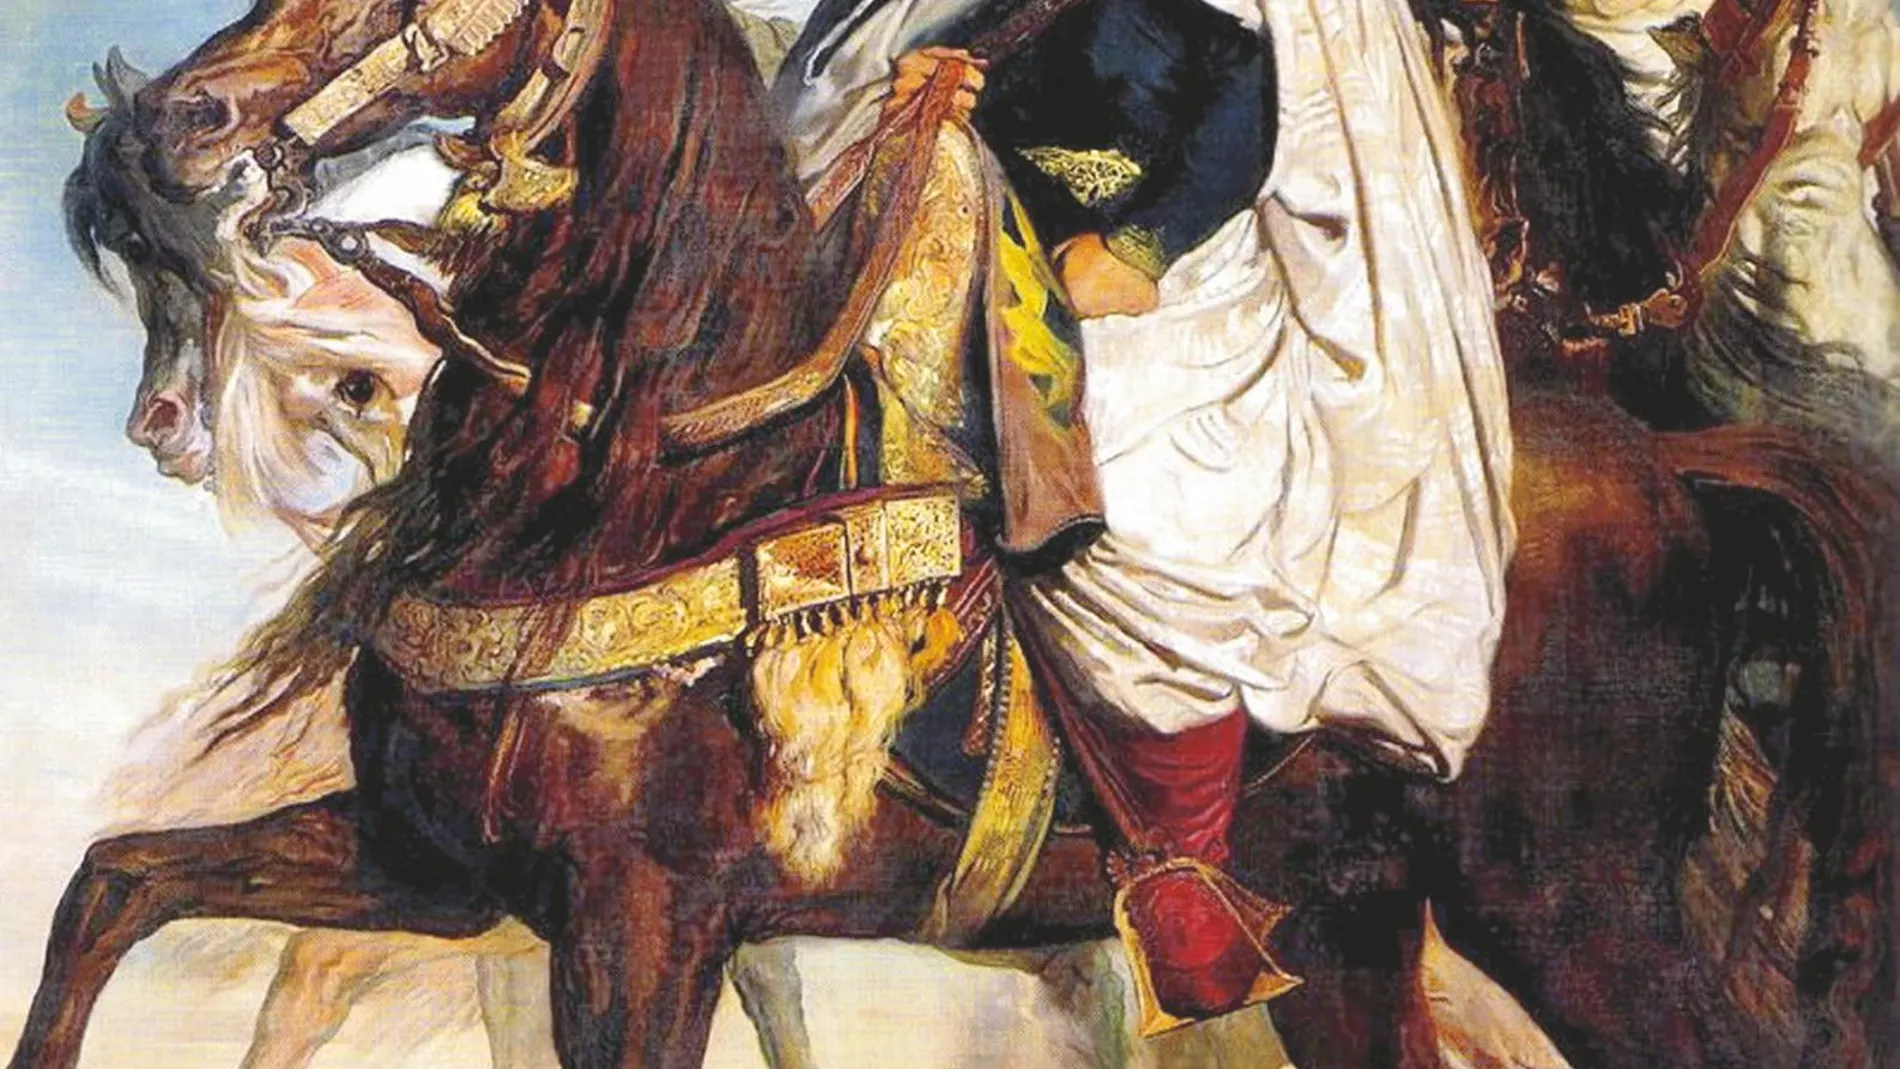 ABDERRAMÁN III fue el gran Califa de Córdoba y reinó durante casi medio siglo como el más poderoso gobernante de la península ibérica